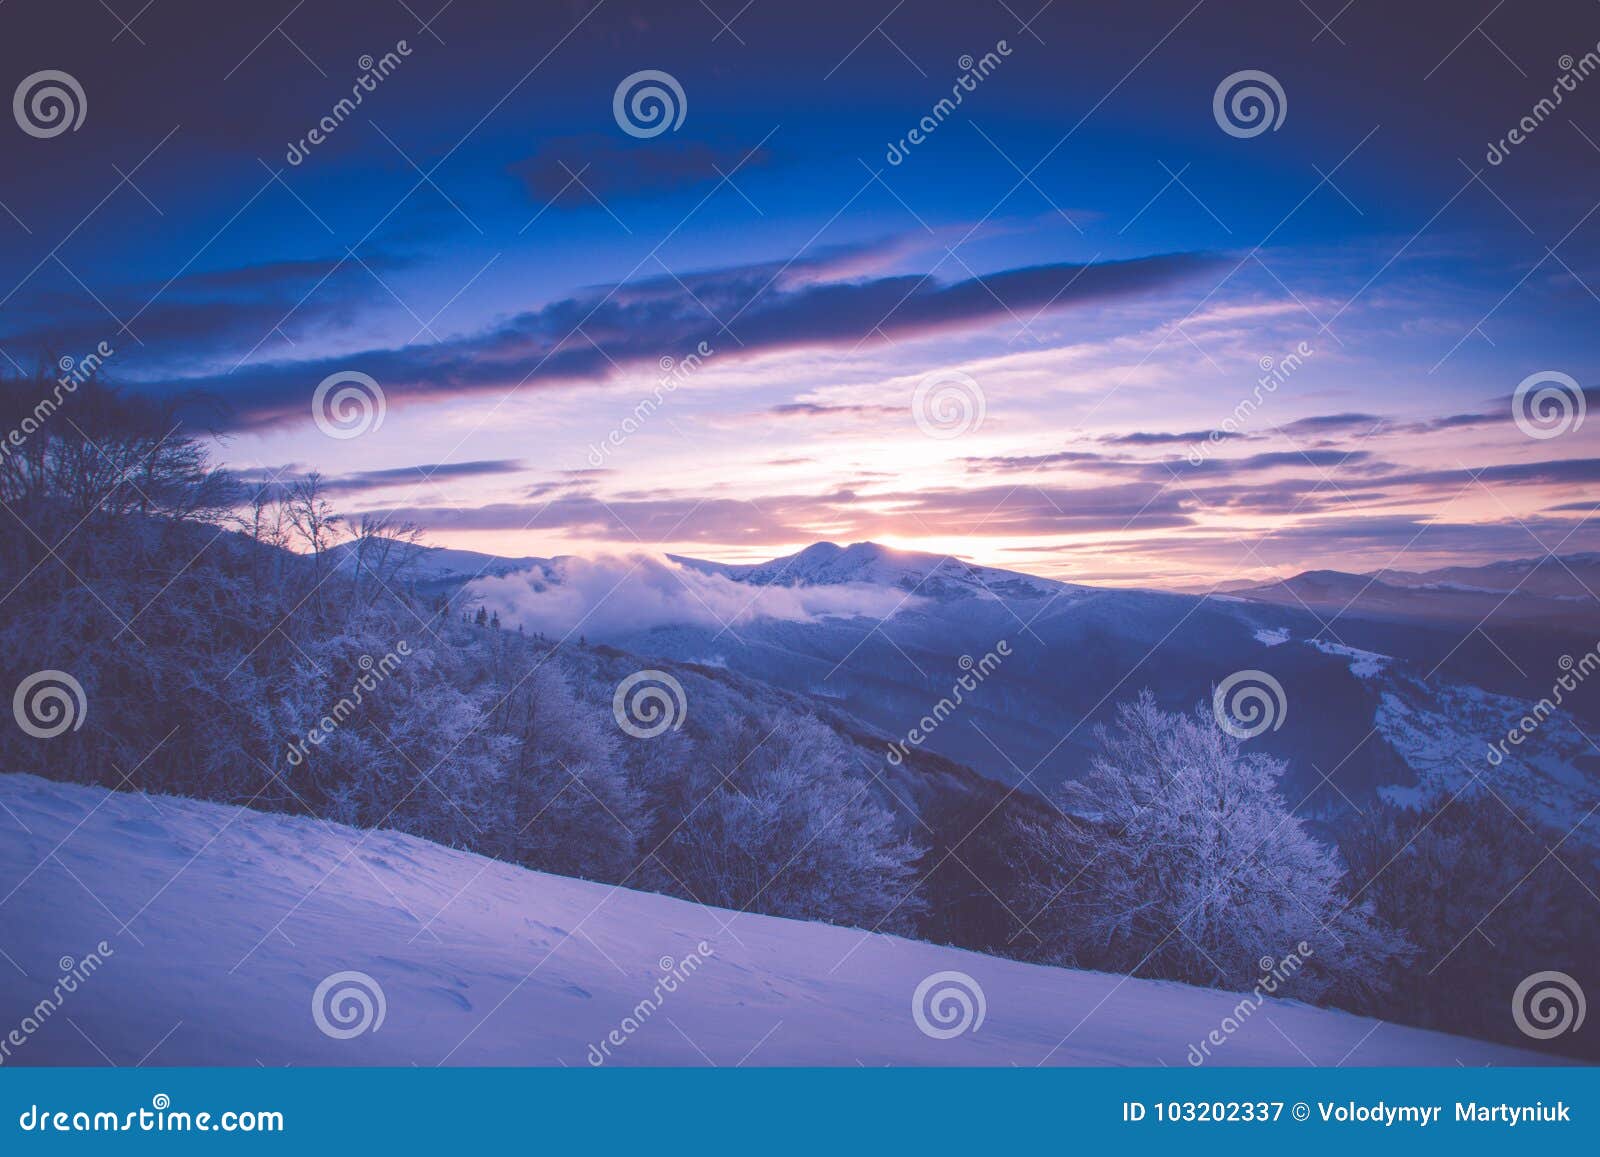 Όμορφη ανατολή στα χειμερινά βουνά Φιλτραρισμένο im. Όμορφη ανατολή στα χειμερινά βουνά Δραματικός νεφελώδης πέρα από τον ουρανό Άποψη των ομιχλωδών λόφων και των δέντρων που καλύπτονται με την πάχνη Φιλτραρισμένη εικόνα: ο σταυρός επεξεργάστηκε την αναδρομική επίδραση